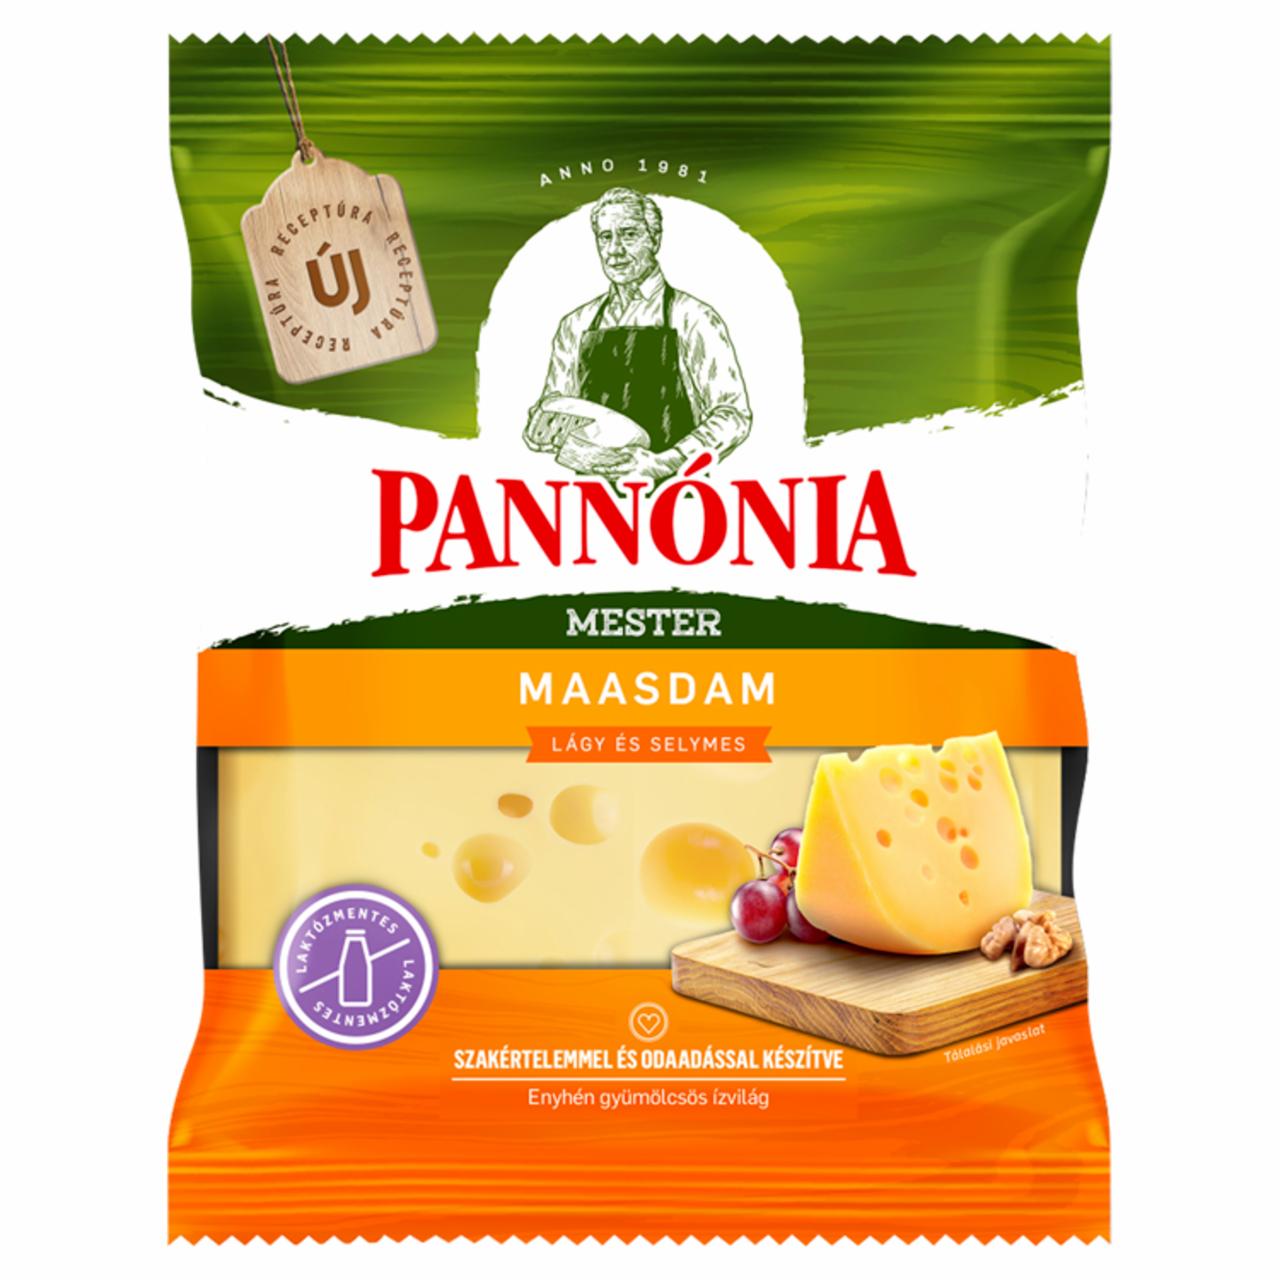 Képek - Pannónia Mester Maasdam darabolt, zsíros, félkemény, erjedési lyukas sajt 200 g